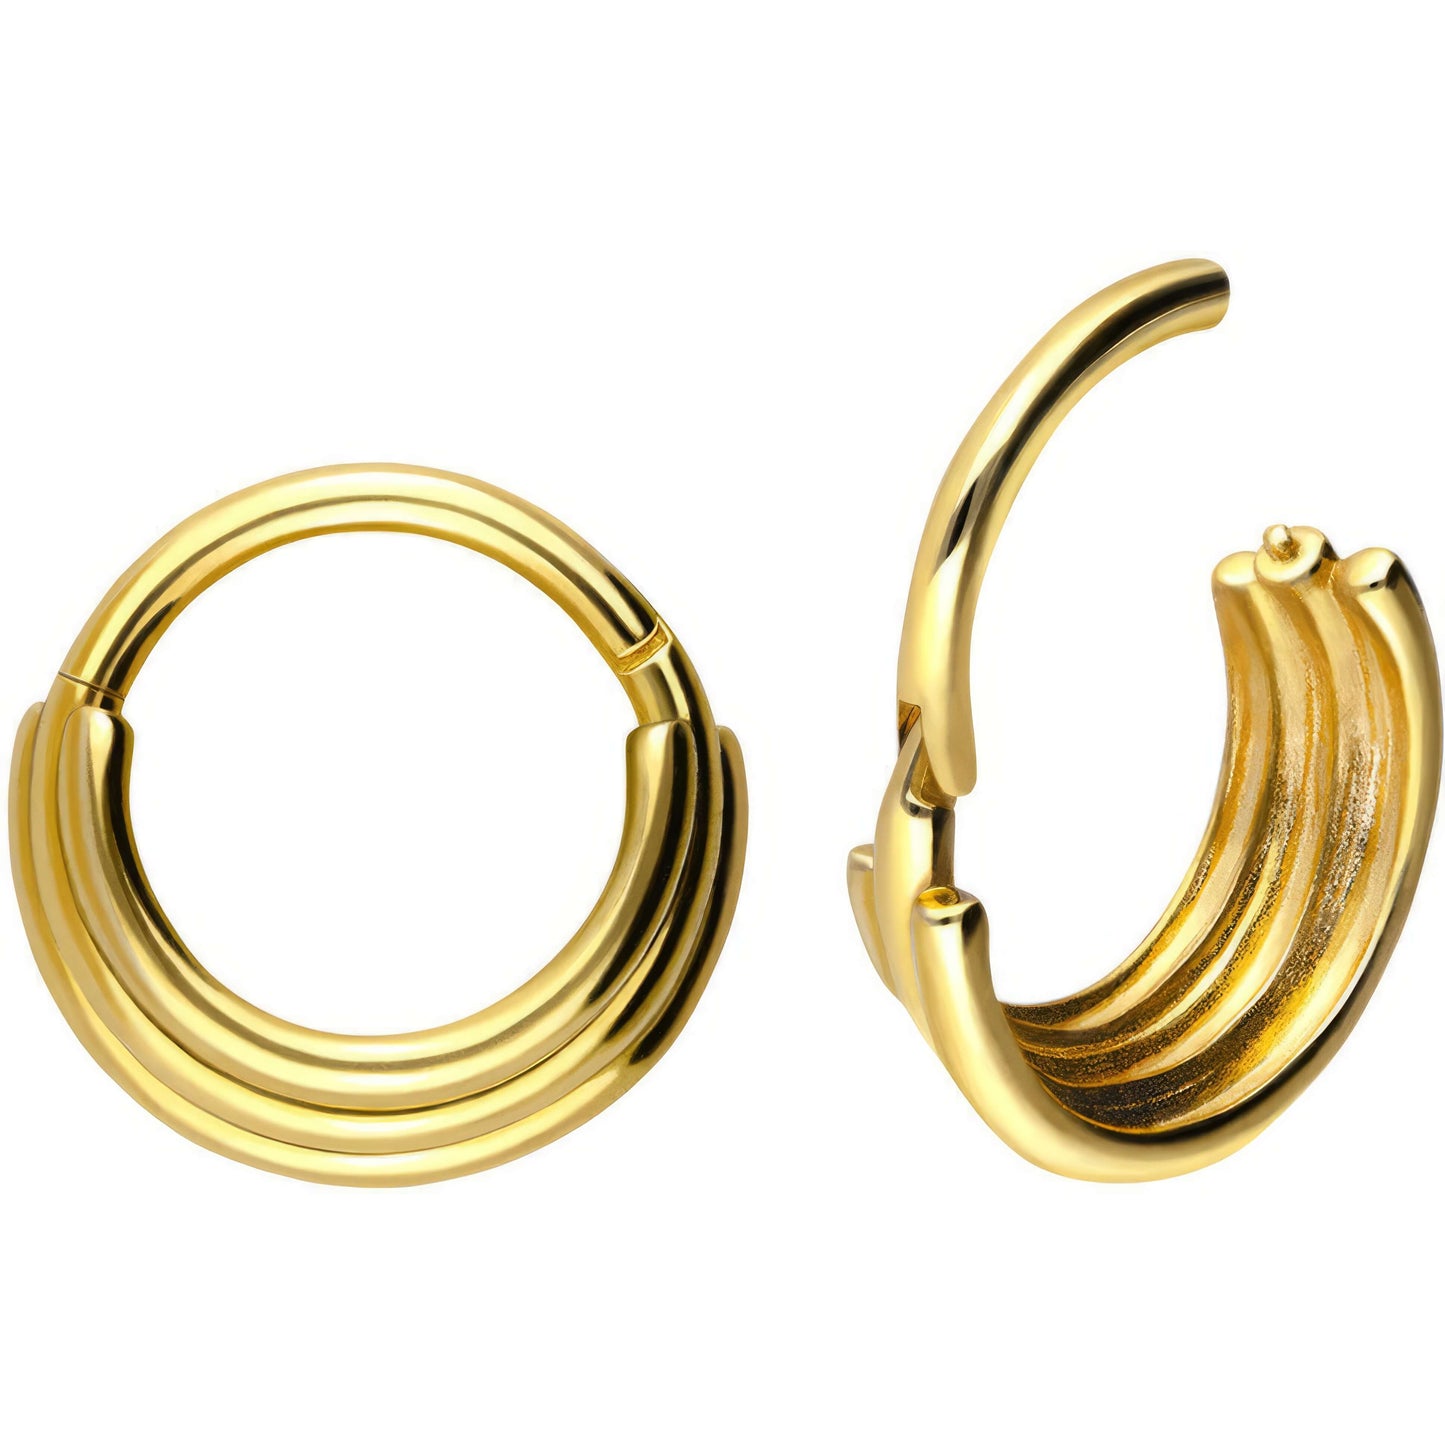 Solid Gold 18 Carat Ring Tripple Ring Clicker